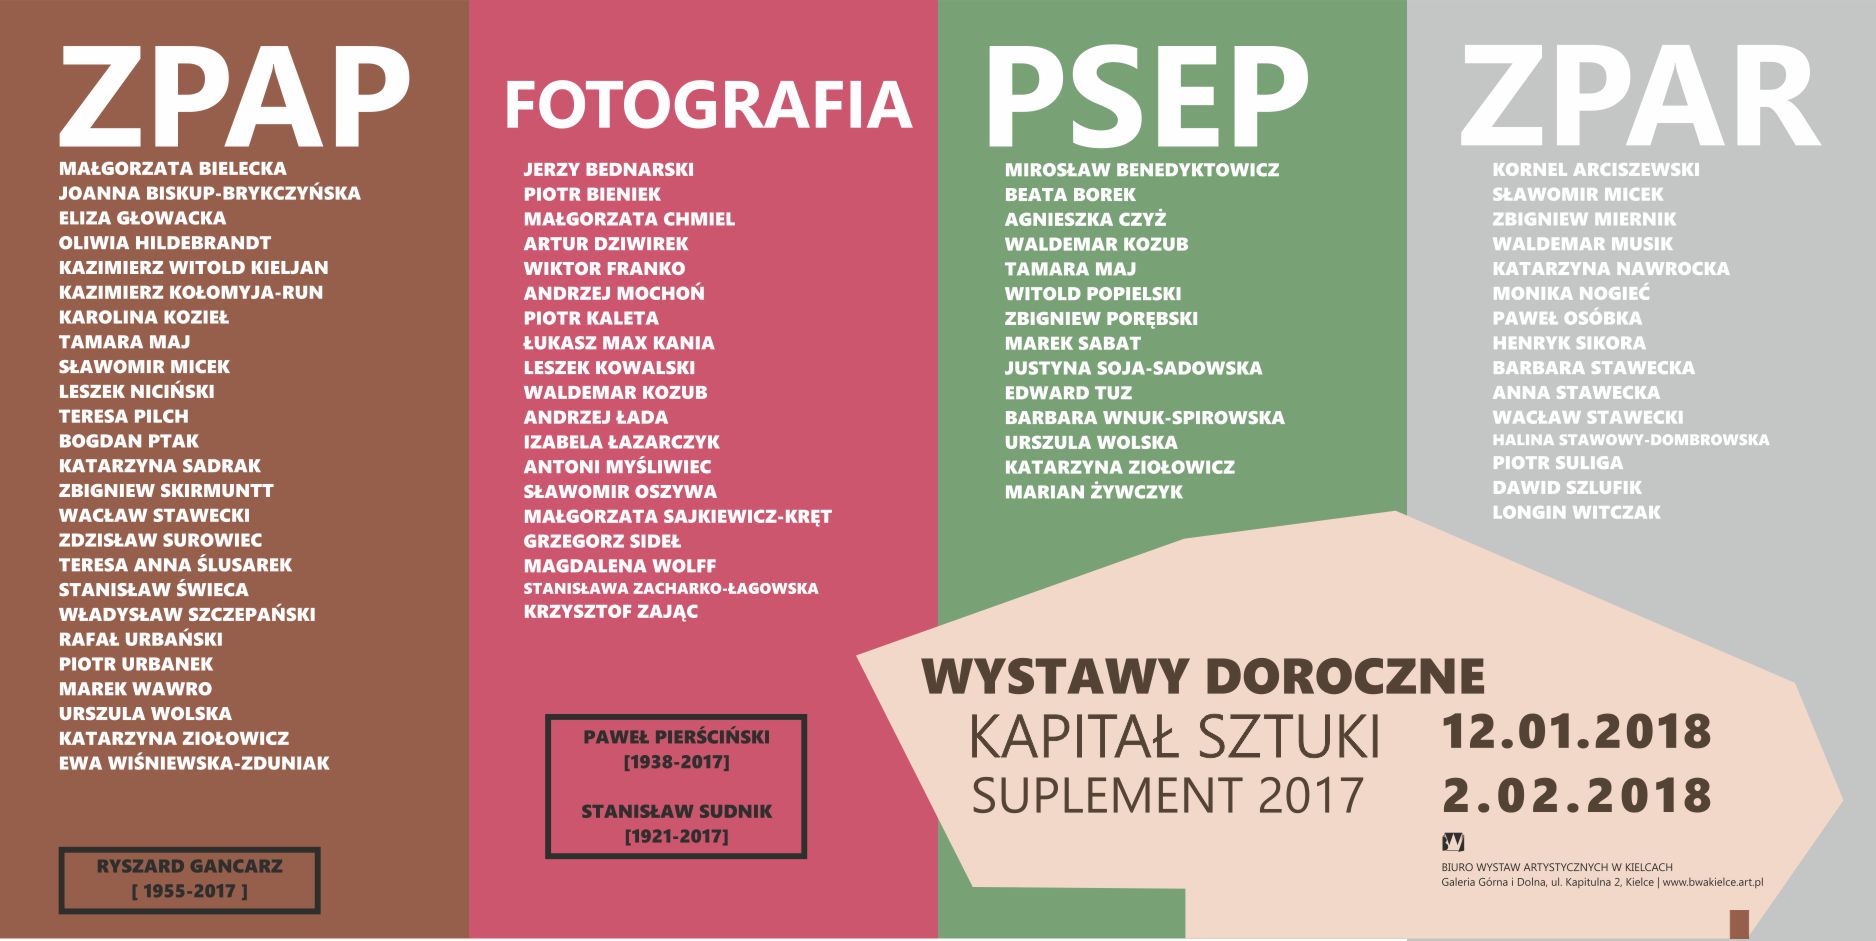 KAPITAŁ SZTUKI – SUPLEMENT 2017 / WYSTAWY DOROCZNE – ZPAP ZPAR FOTOGRAFIA PSEP - 1